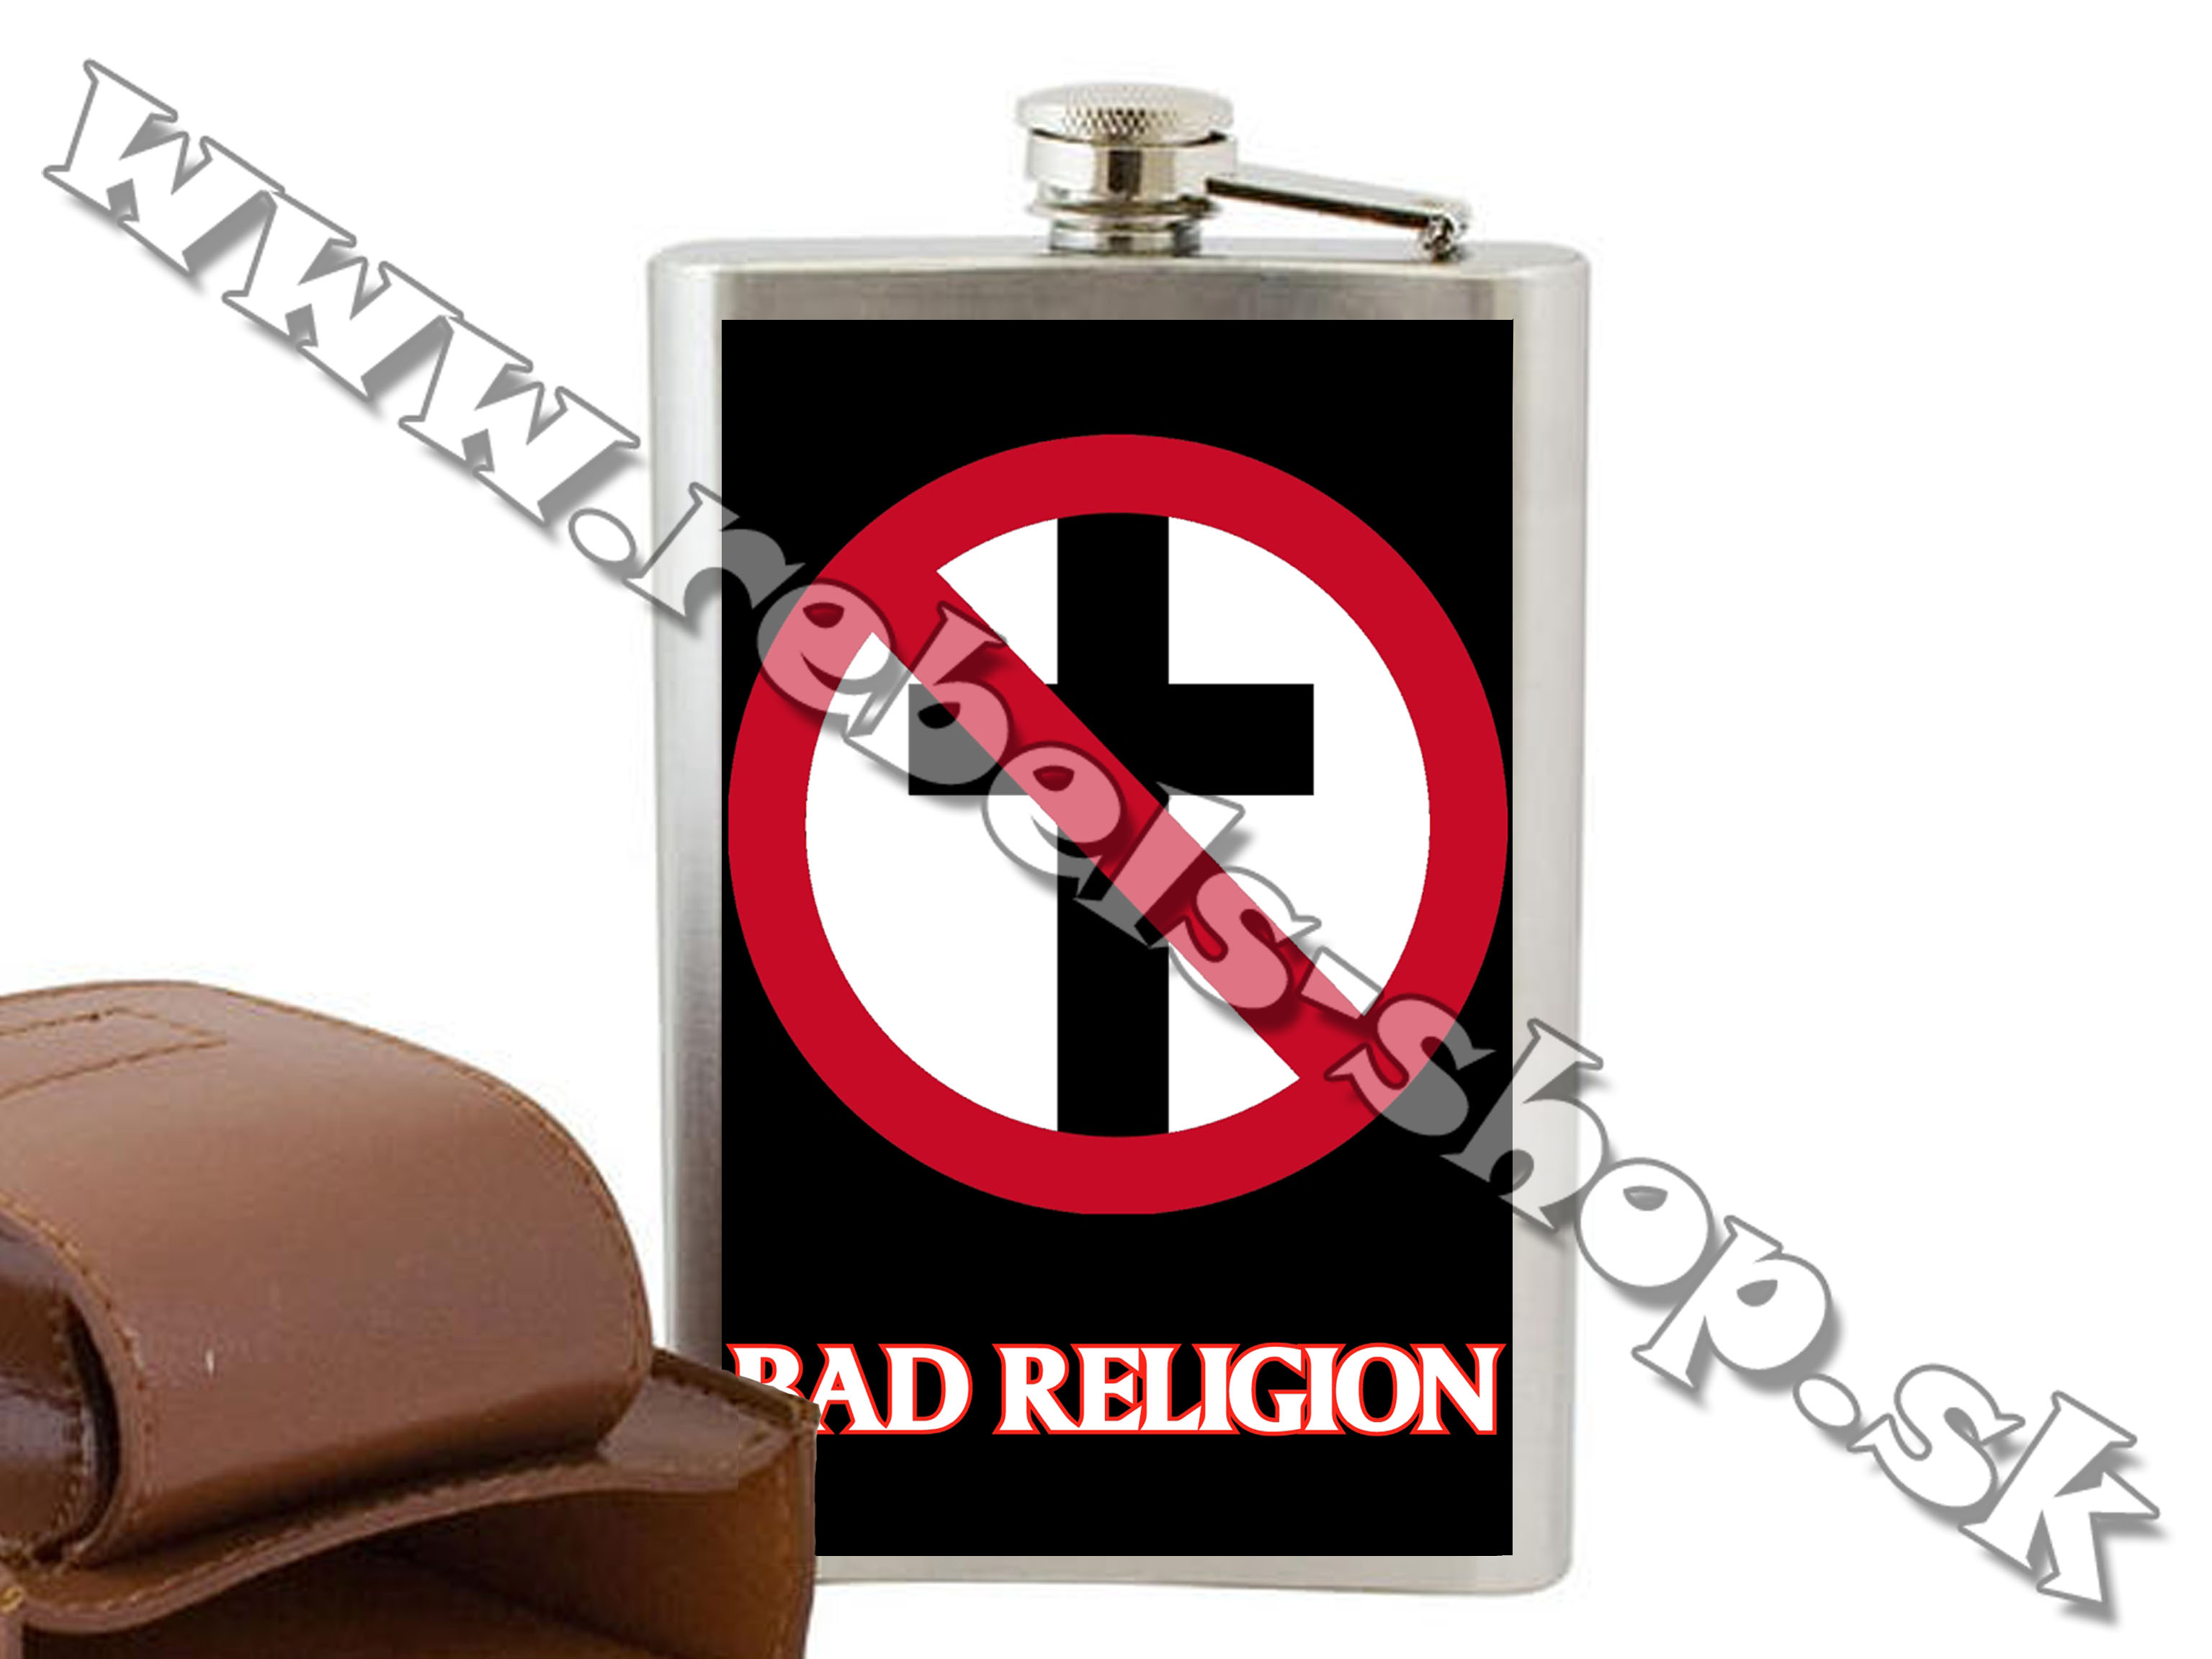 Ploskačka "Bad Religion"